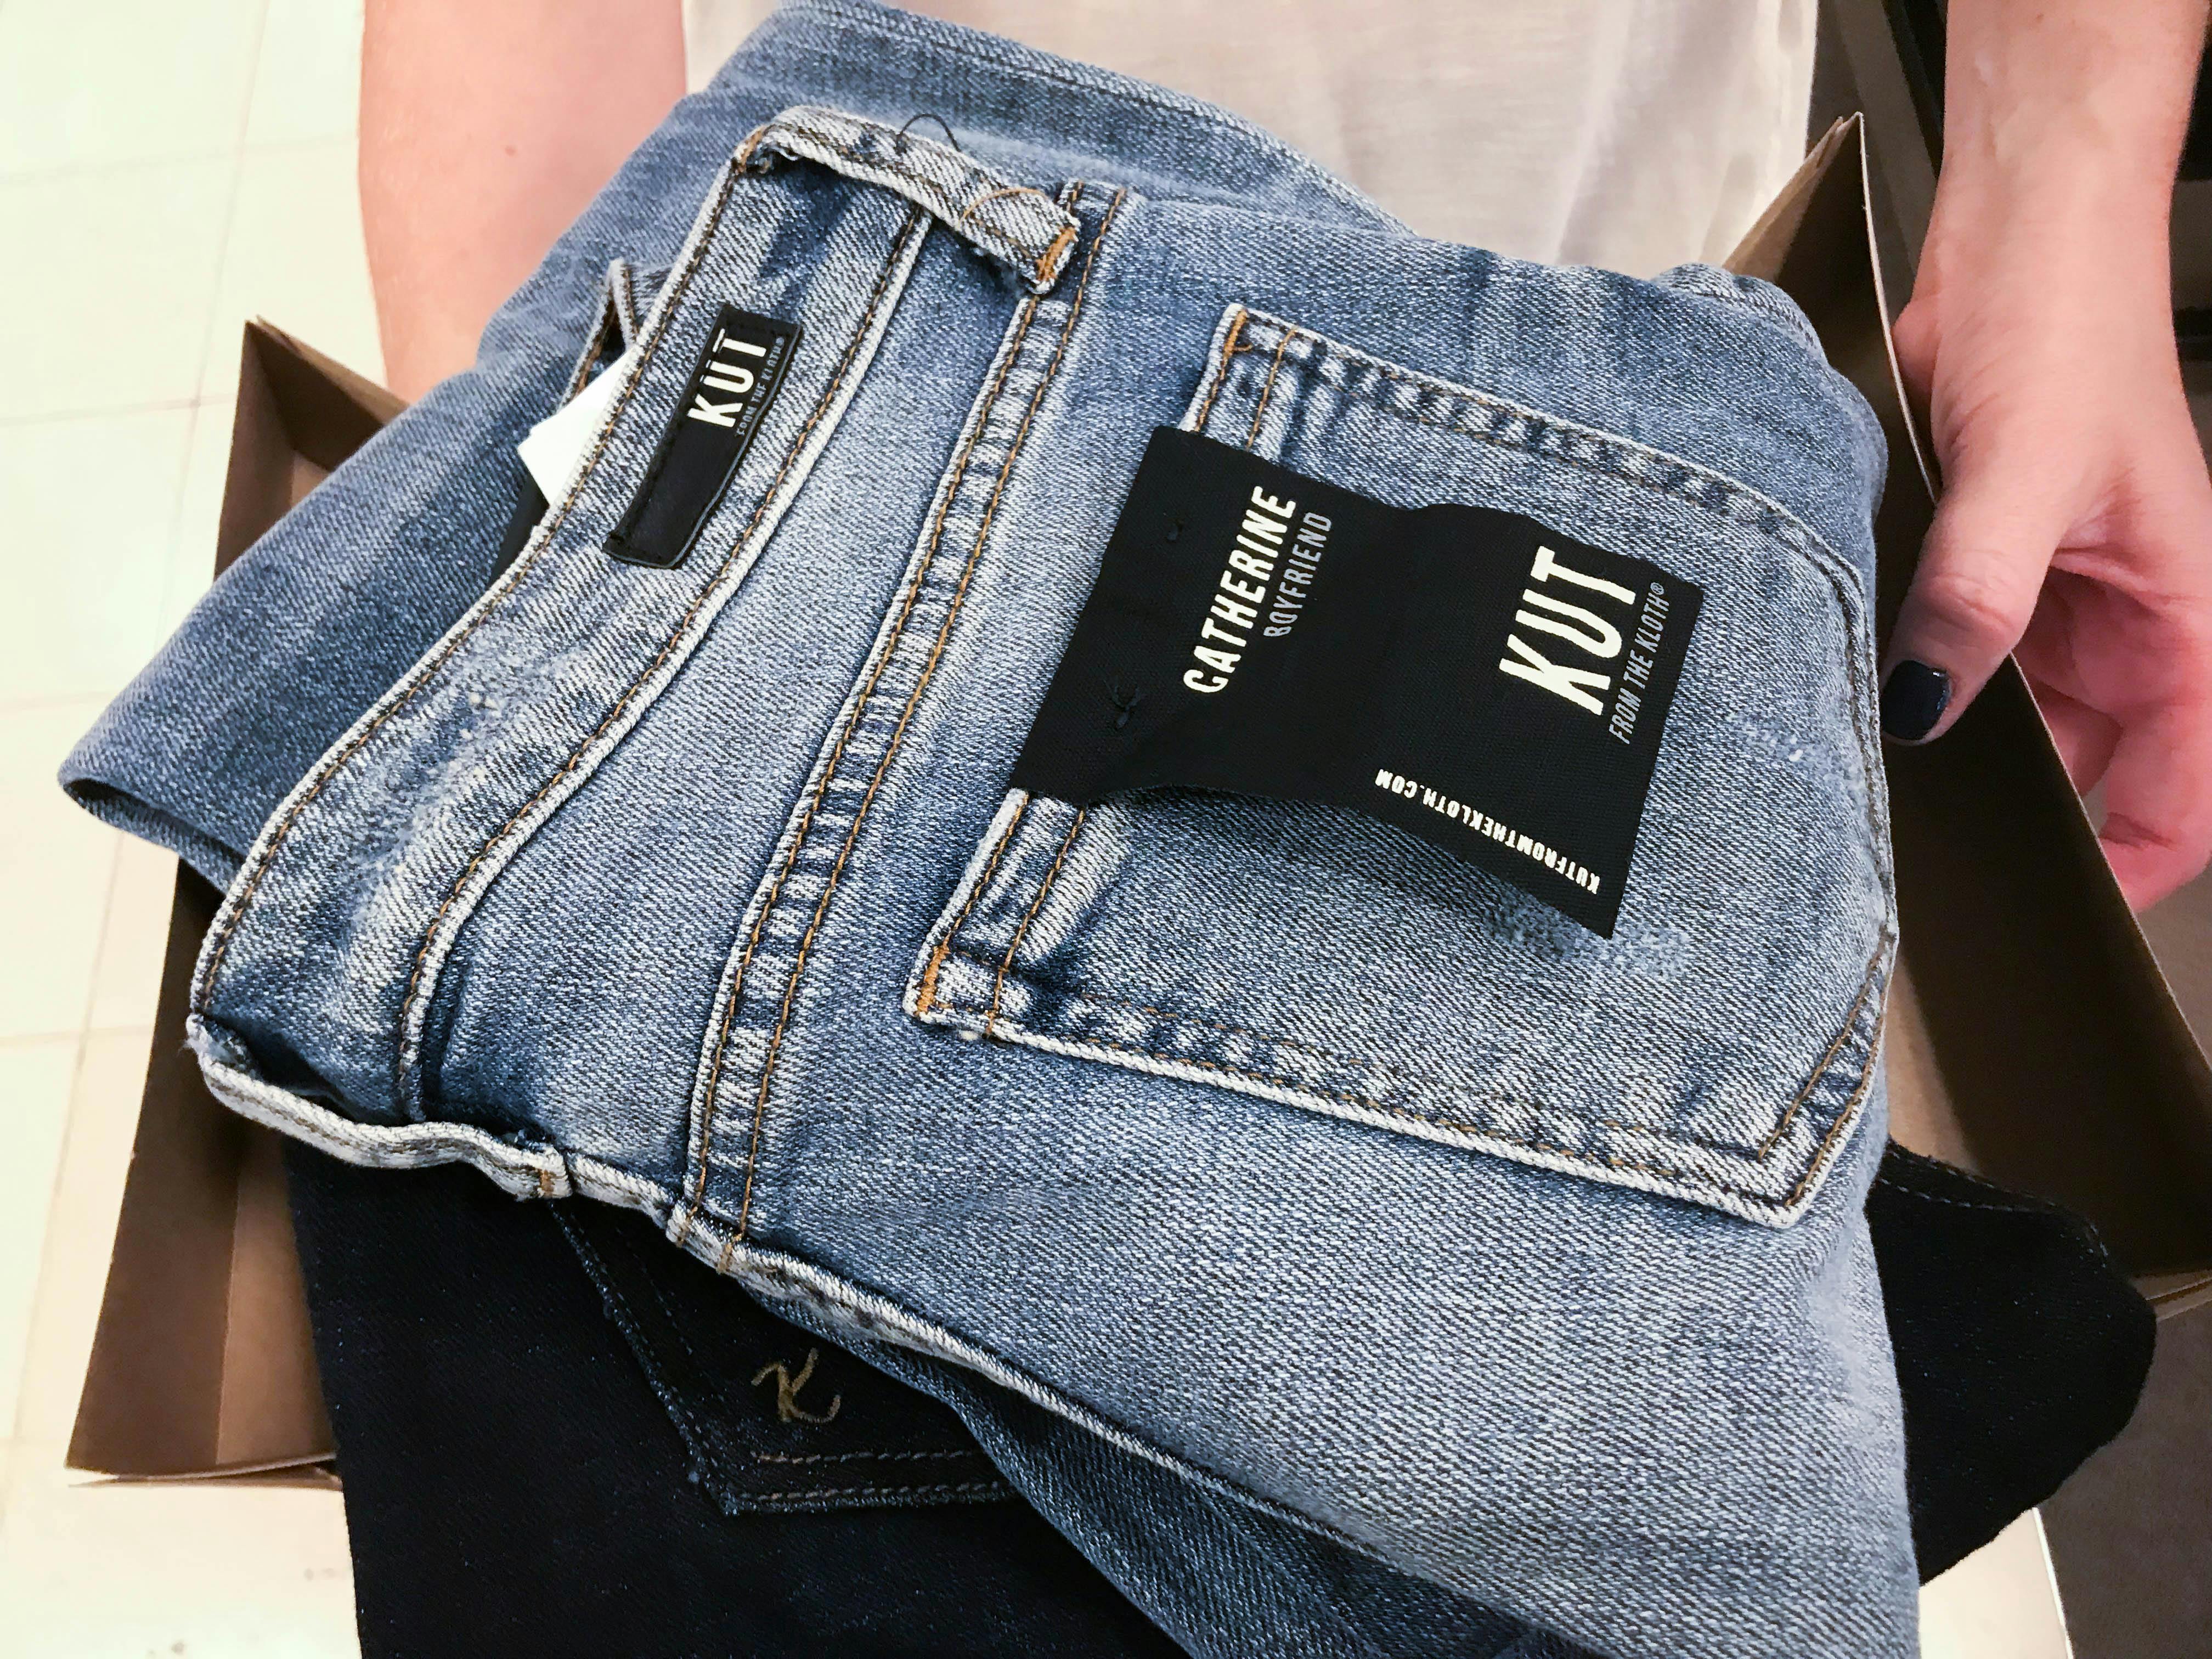 trigger jeans offer